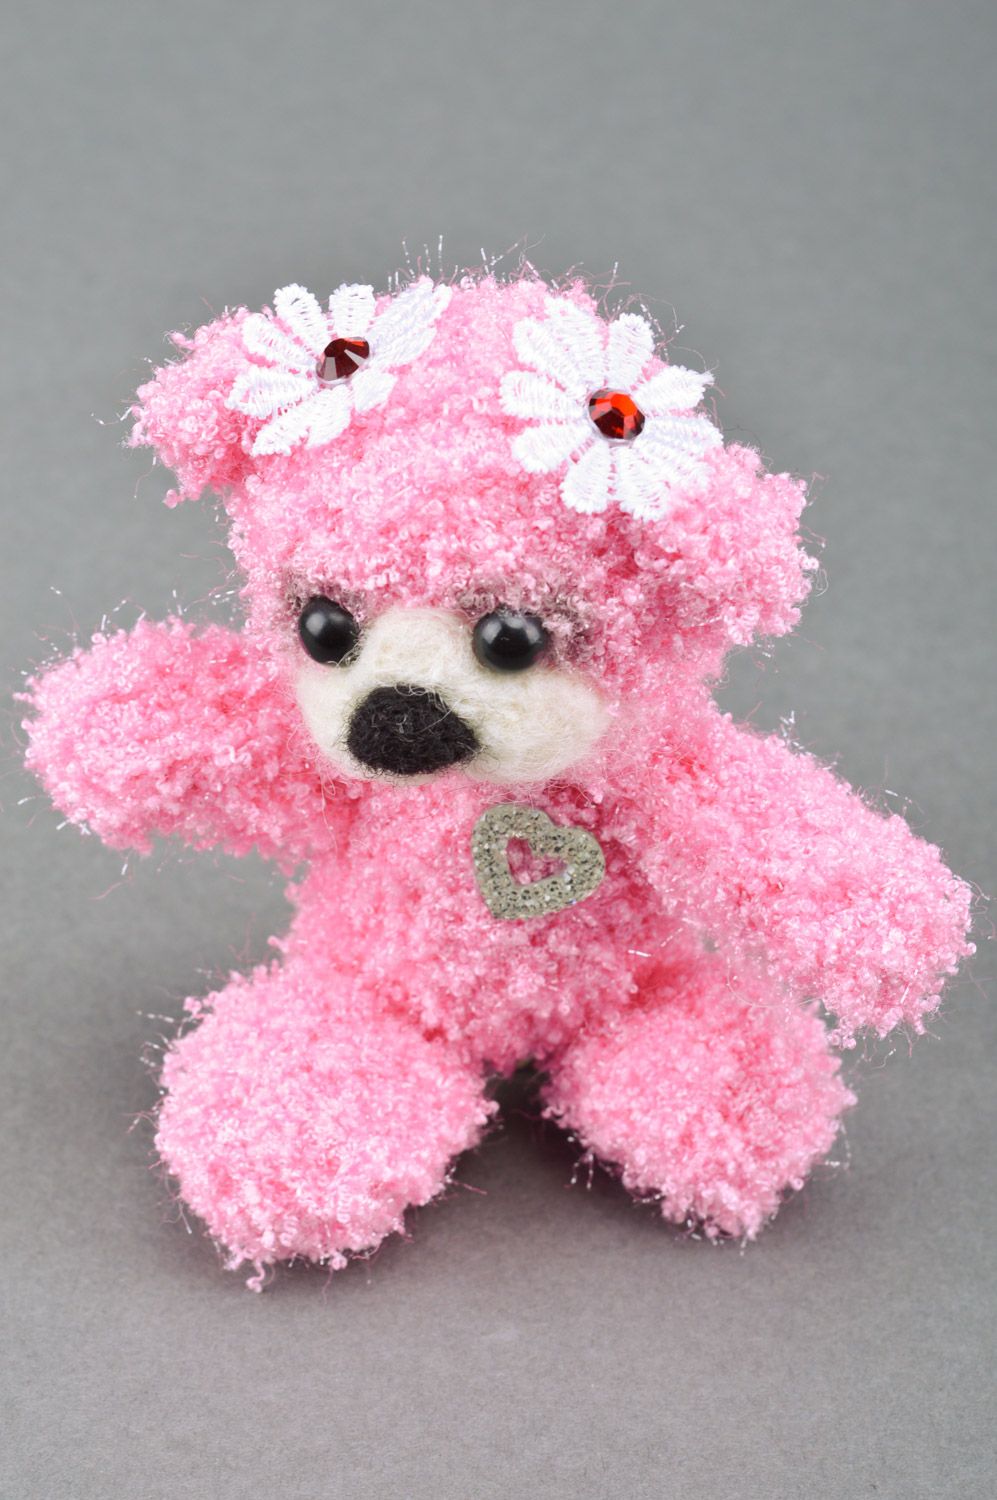 Rosafarbiges weiches handgemachtes Spielzeug für Kinder in Form vom Bären schön foto 2